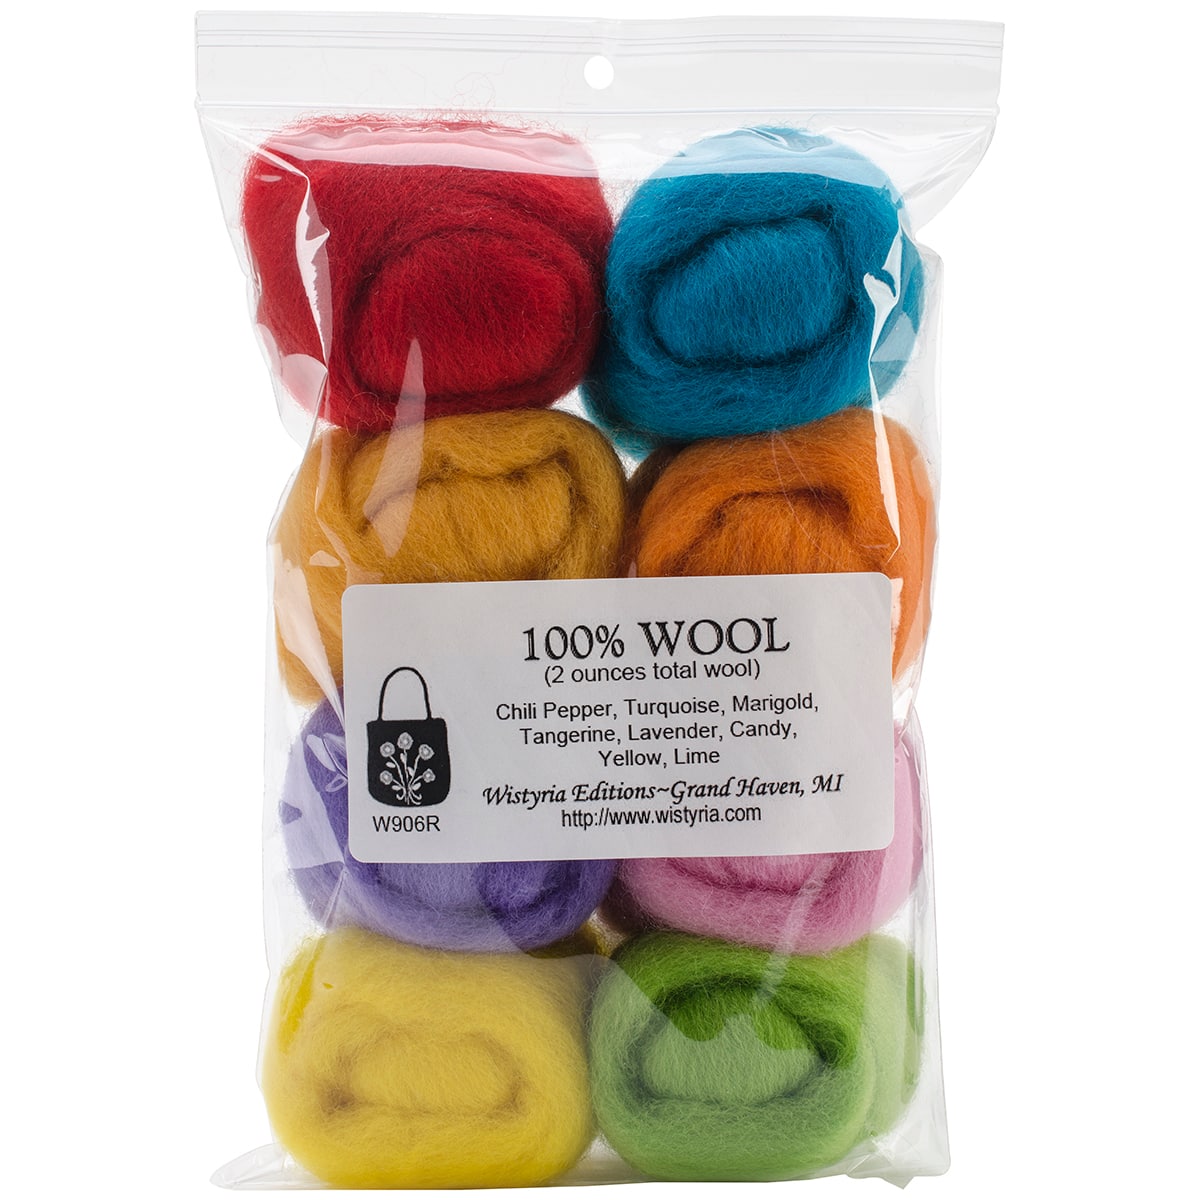 Wistyria Editions Confetti Wool Roving Rolls, 2oz.